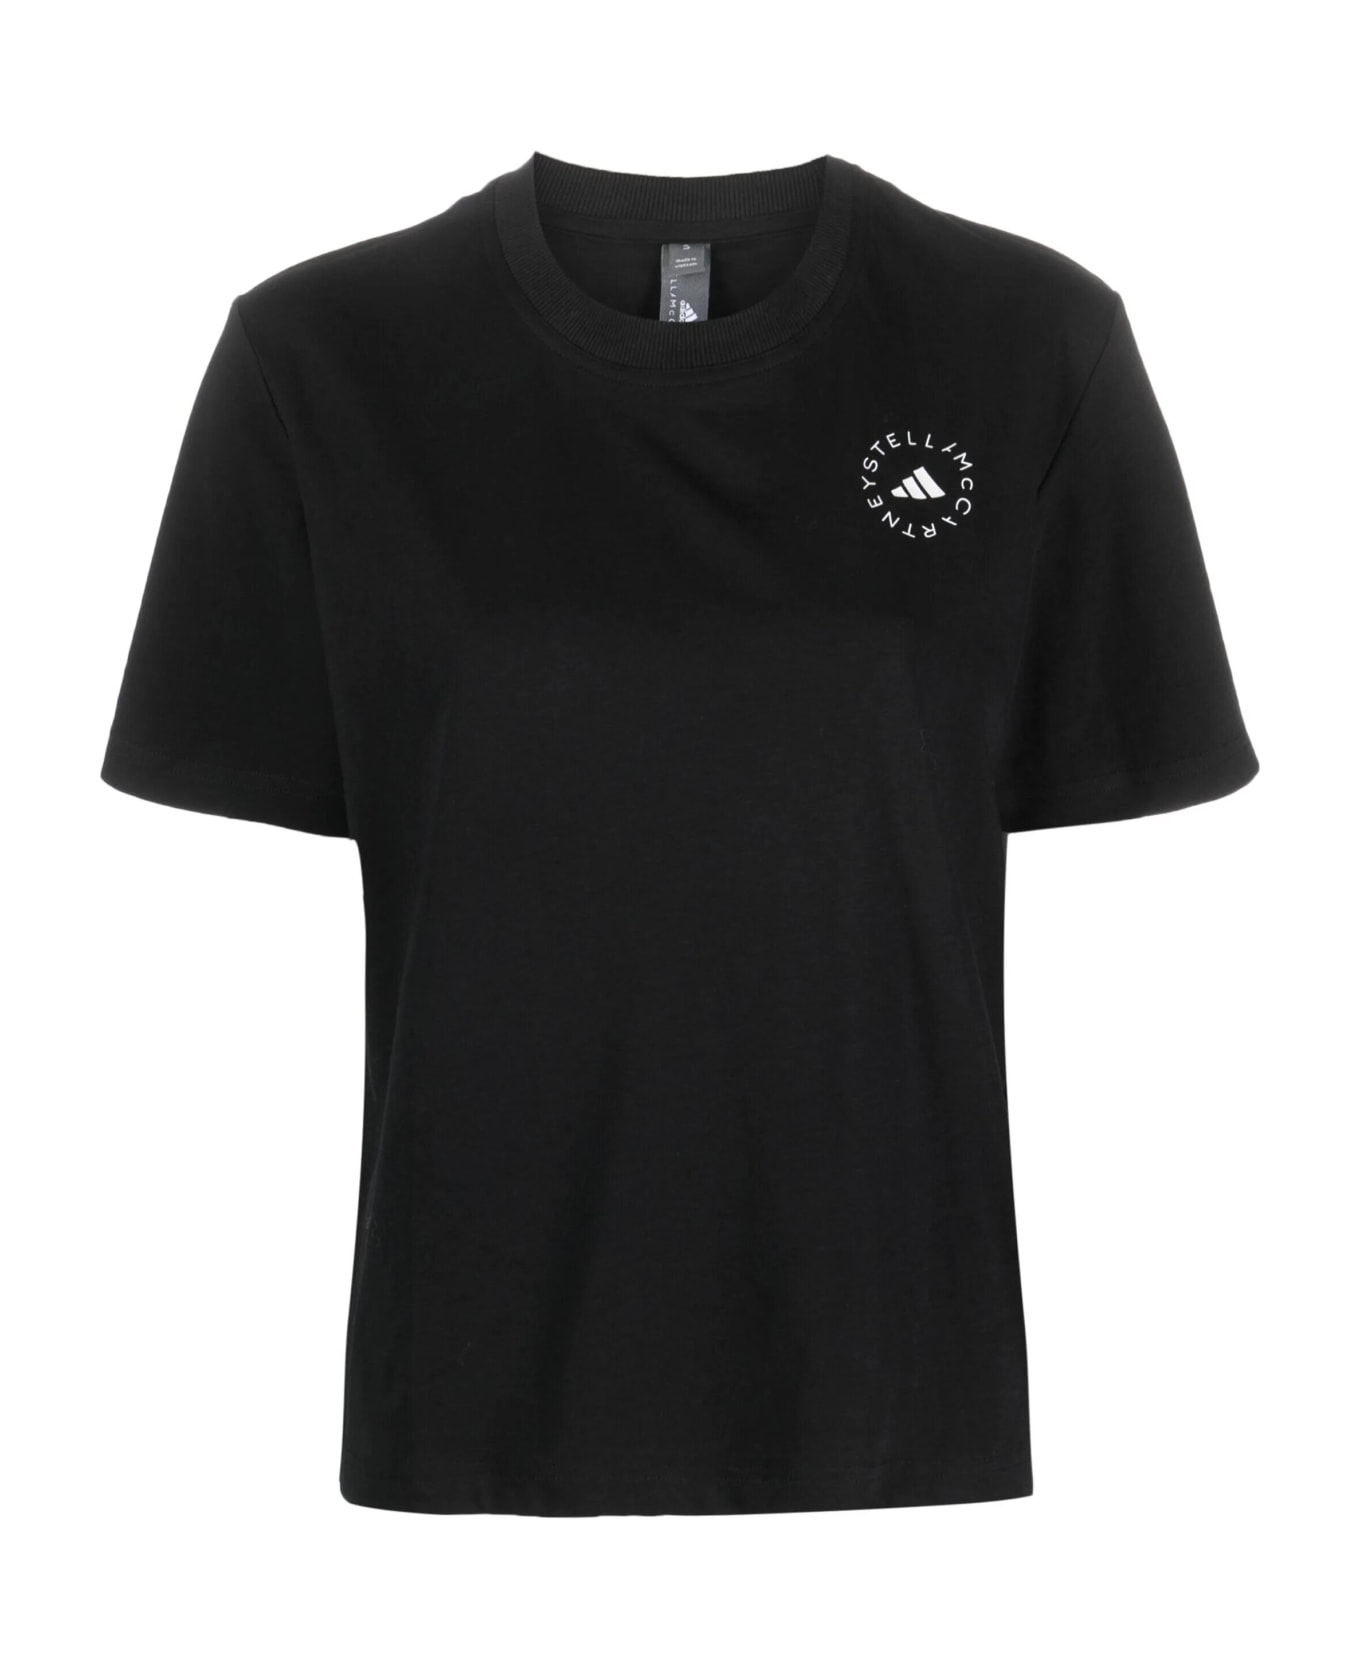 Adidas by Stella McCartney T Shirt - Black